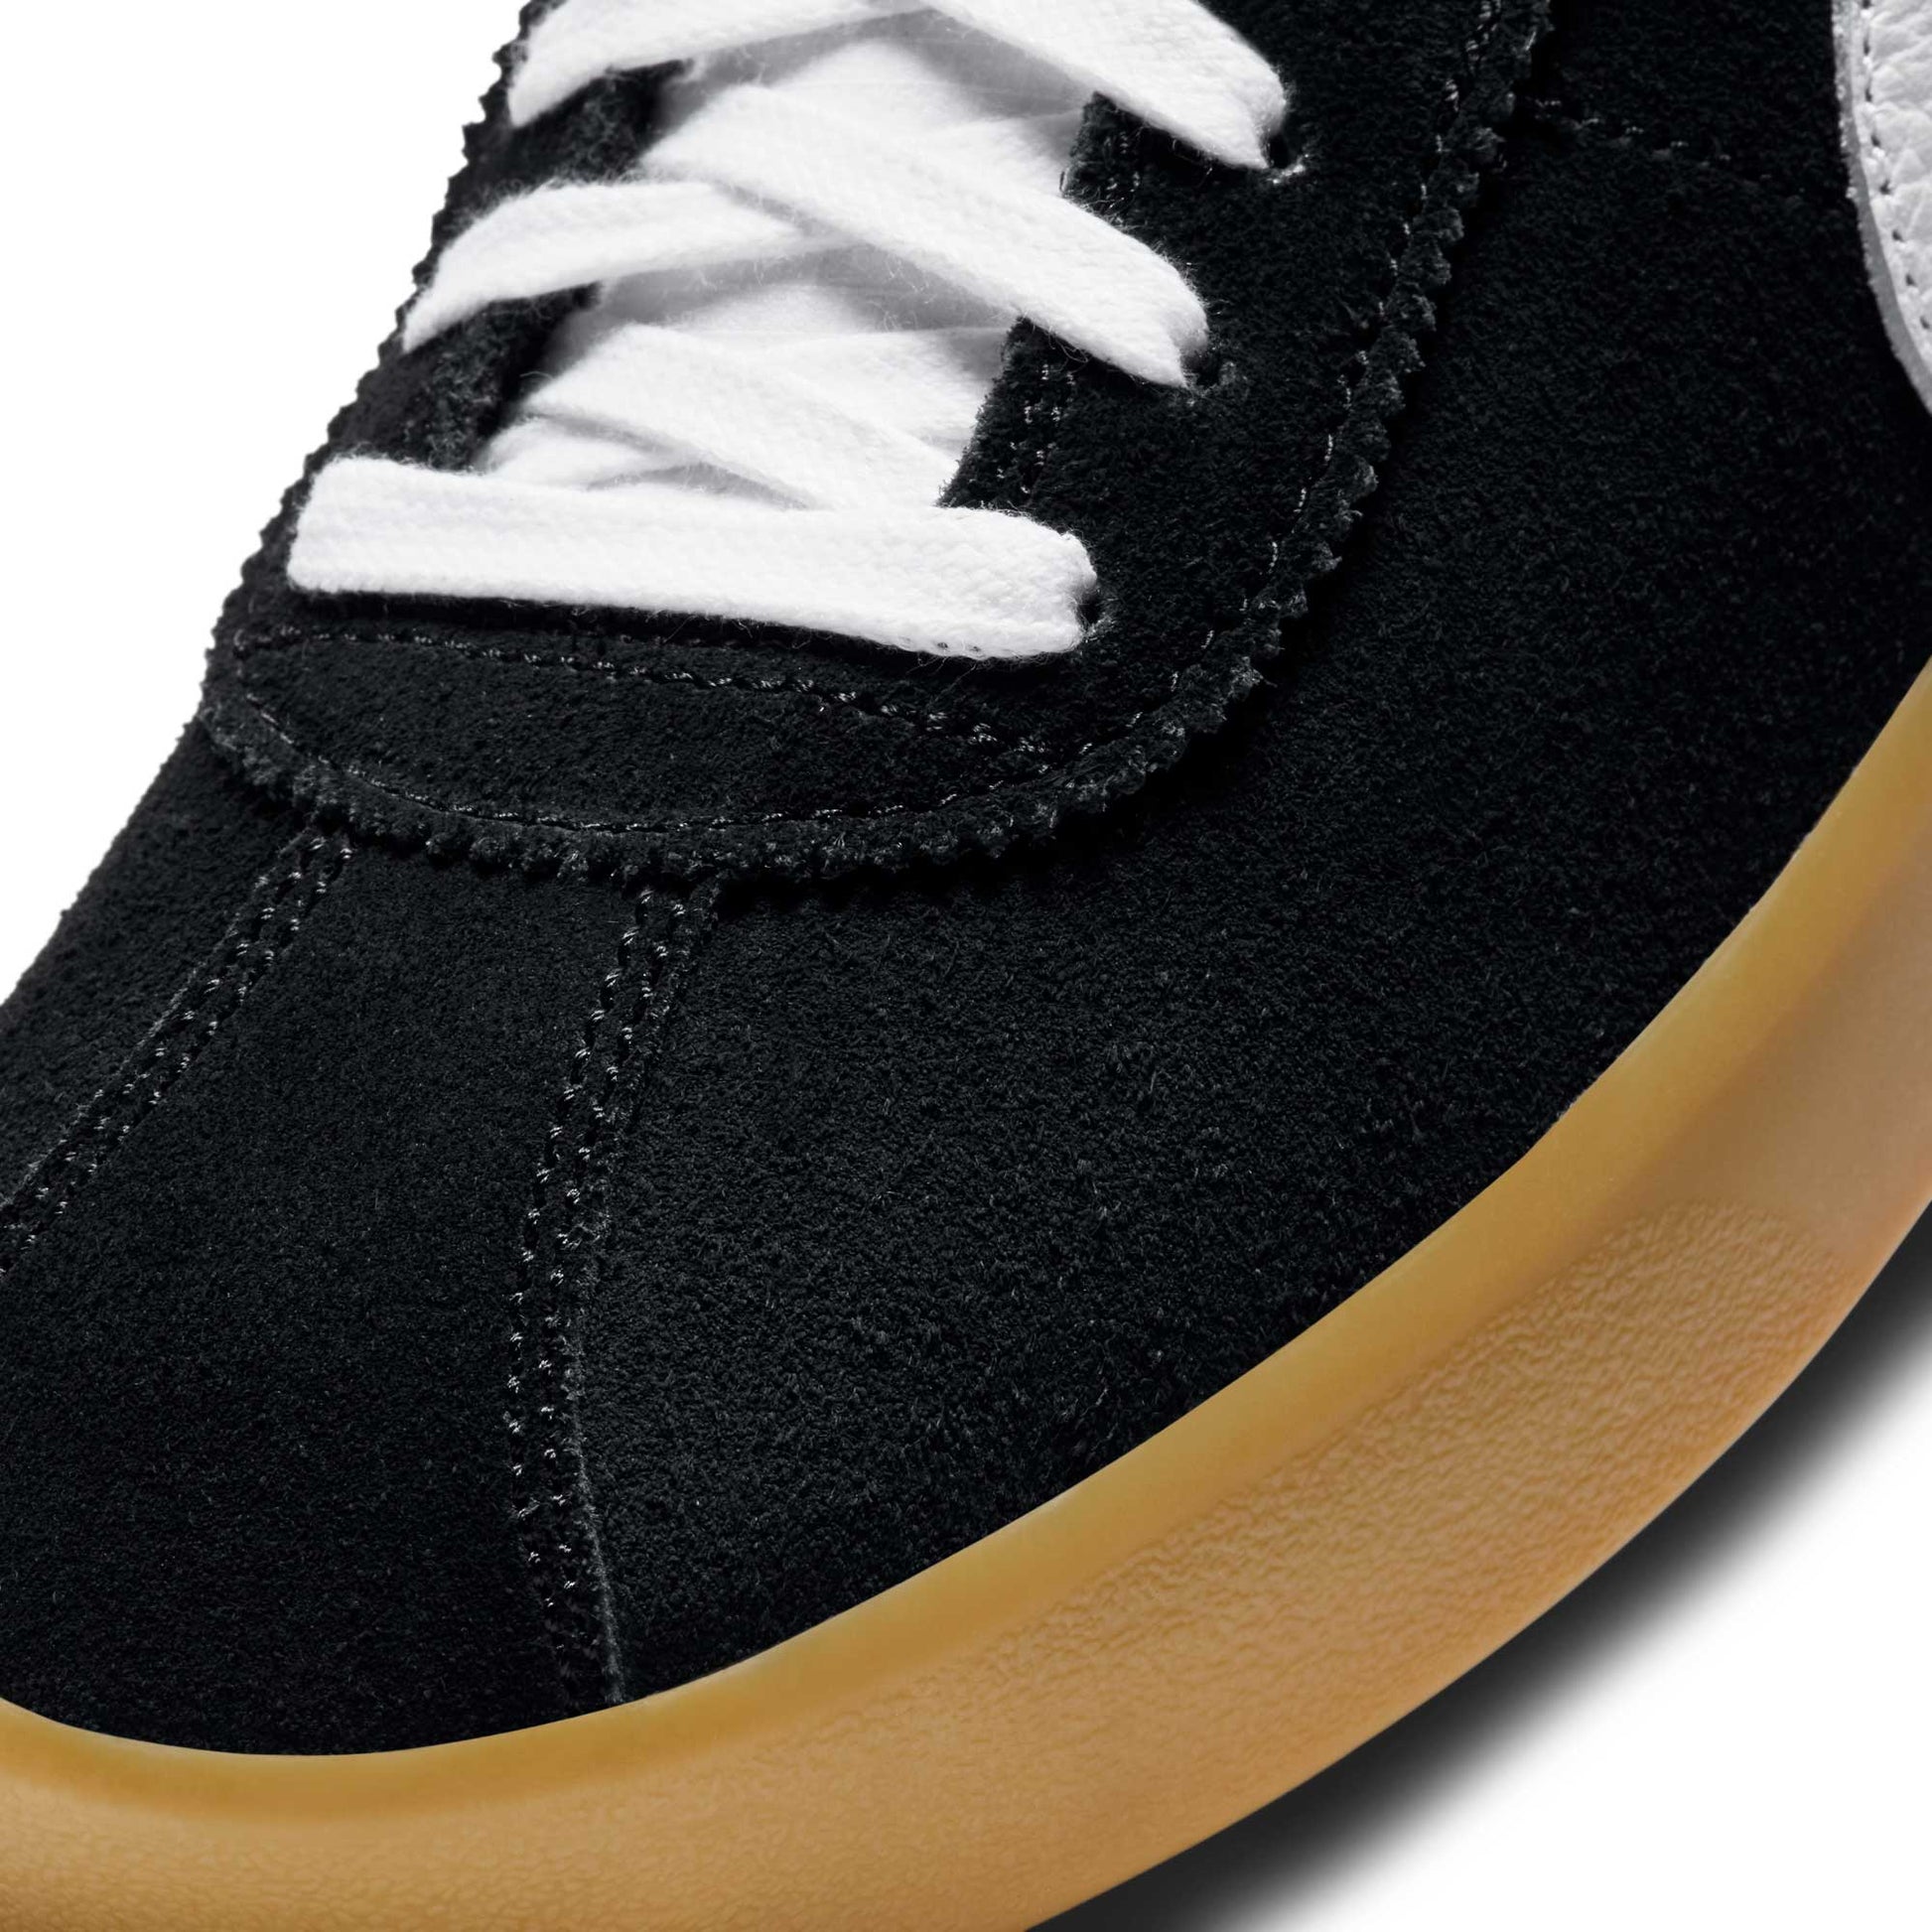 Nike SB Bruin React, black/white-black-gum light brown - Tiki Room Skateboards - 9